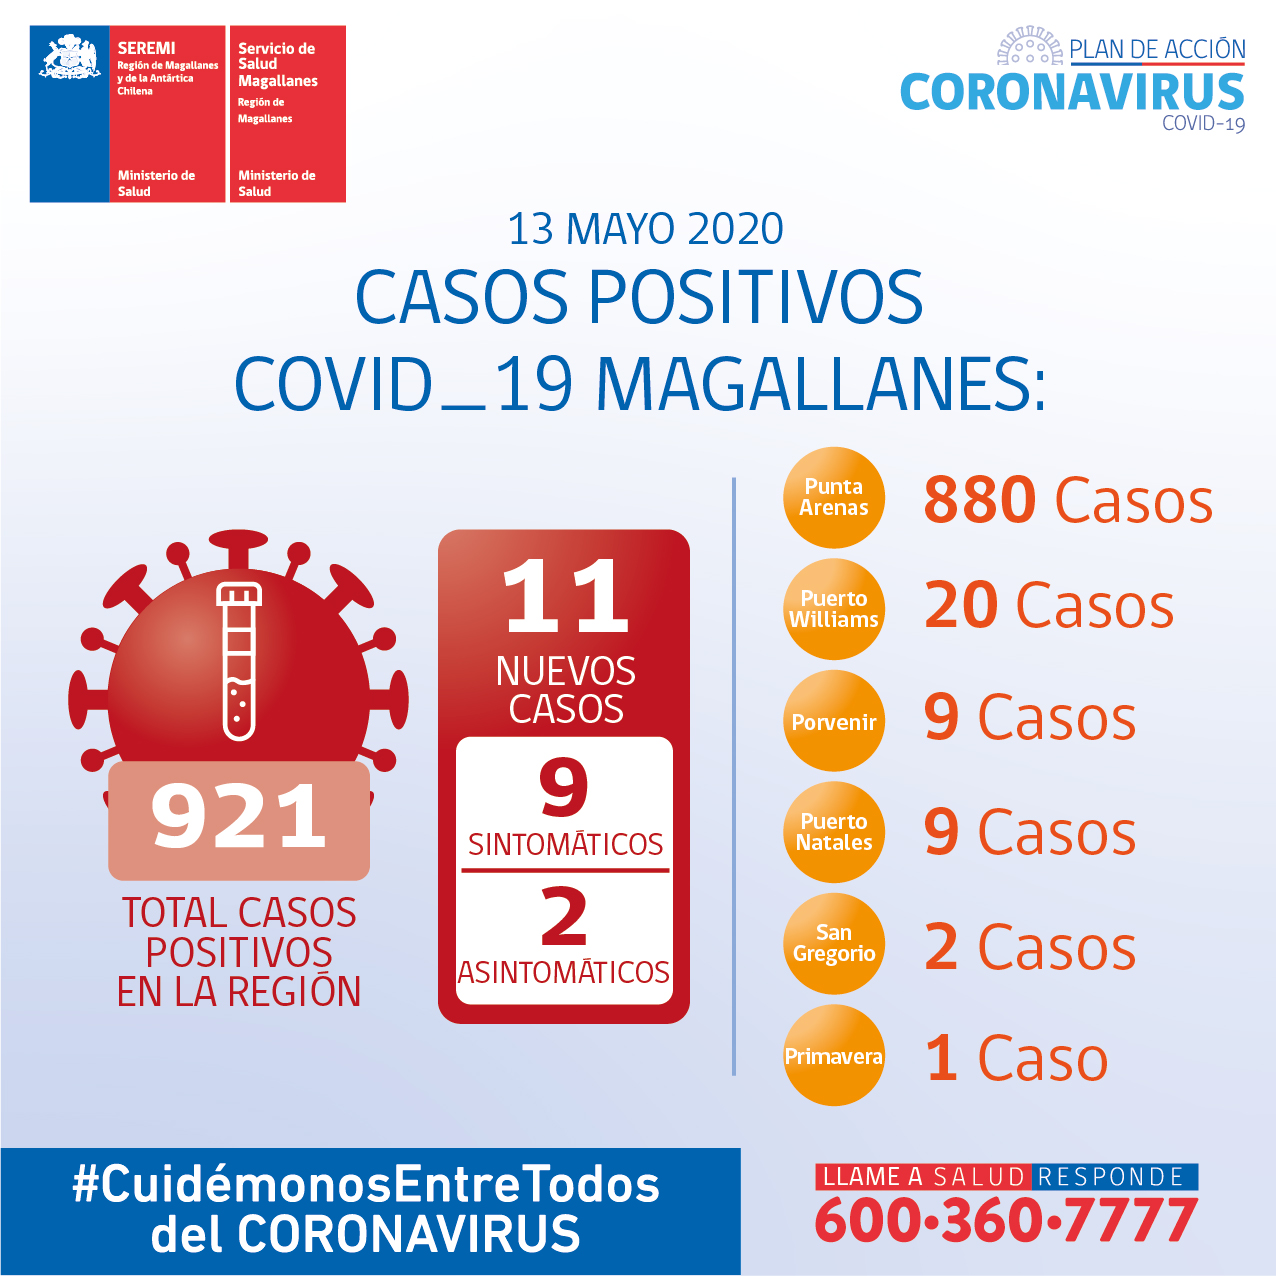 11 casos nuevos de Covid19 se registran en Magallanes al 13 de mayo: casos totales suman 921 personas contagiadas